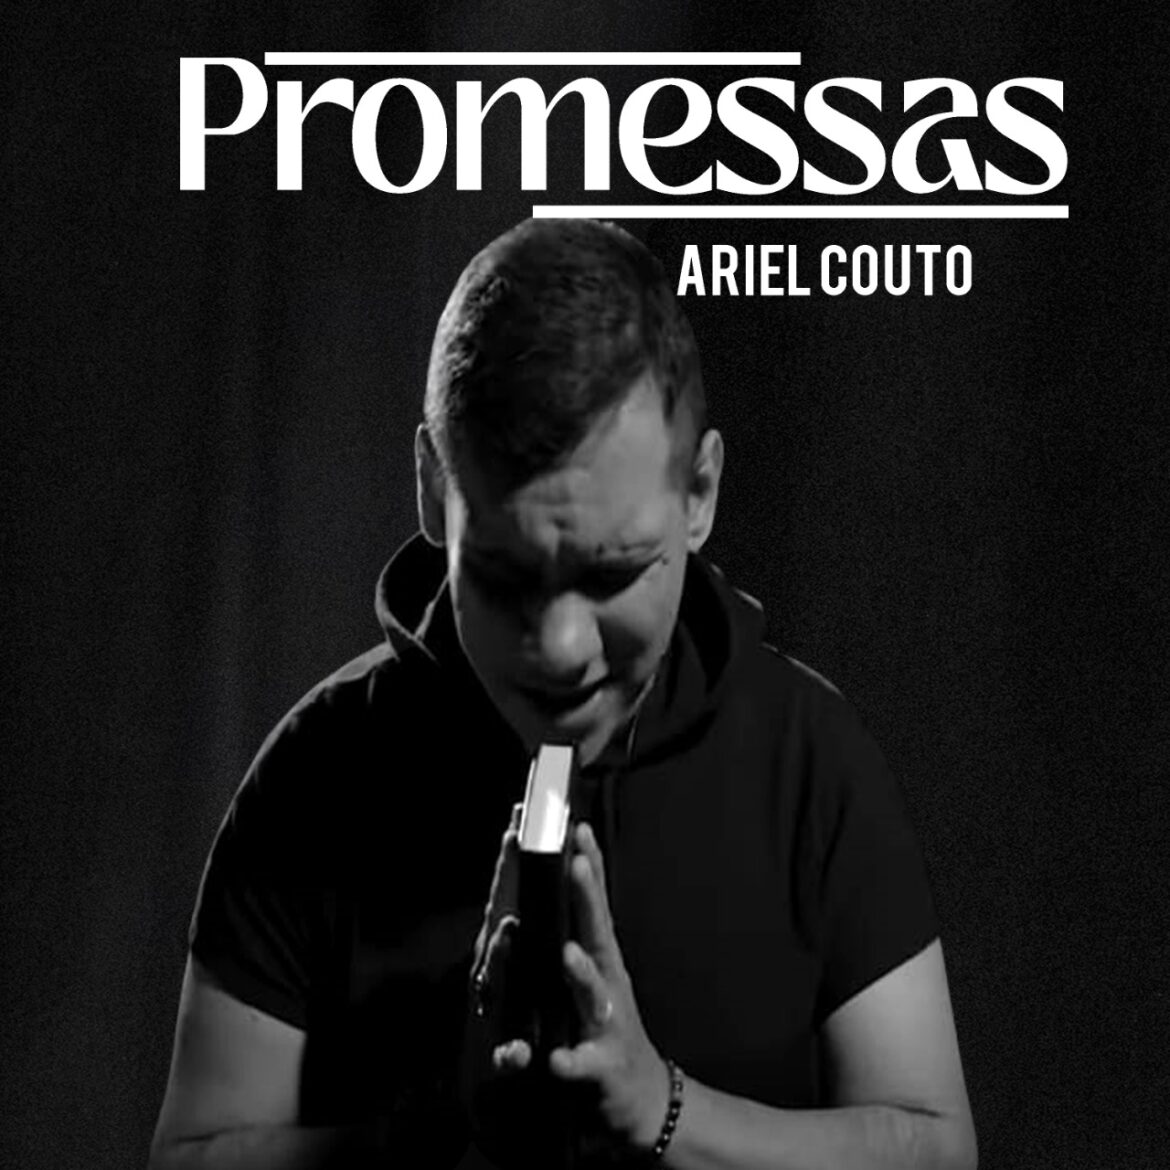 Voz singular surge na música gospel nacional, Ariel Couto lança single inaugural de seu primeiro EP